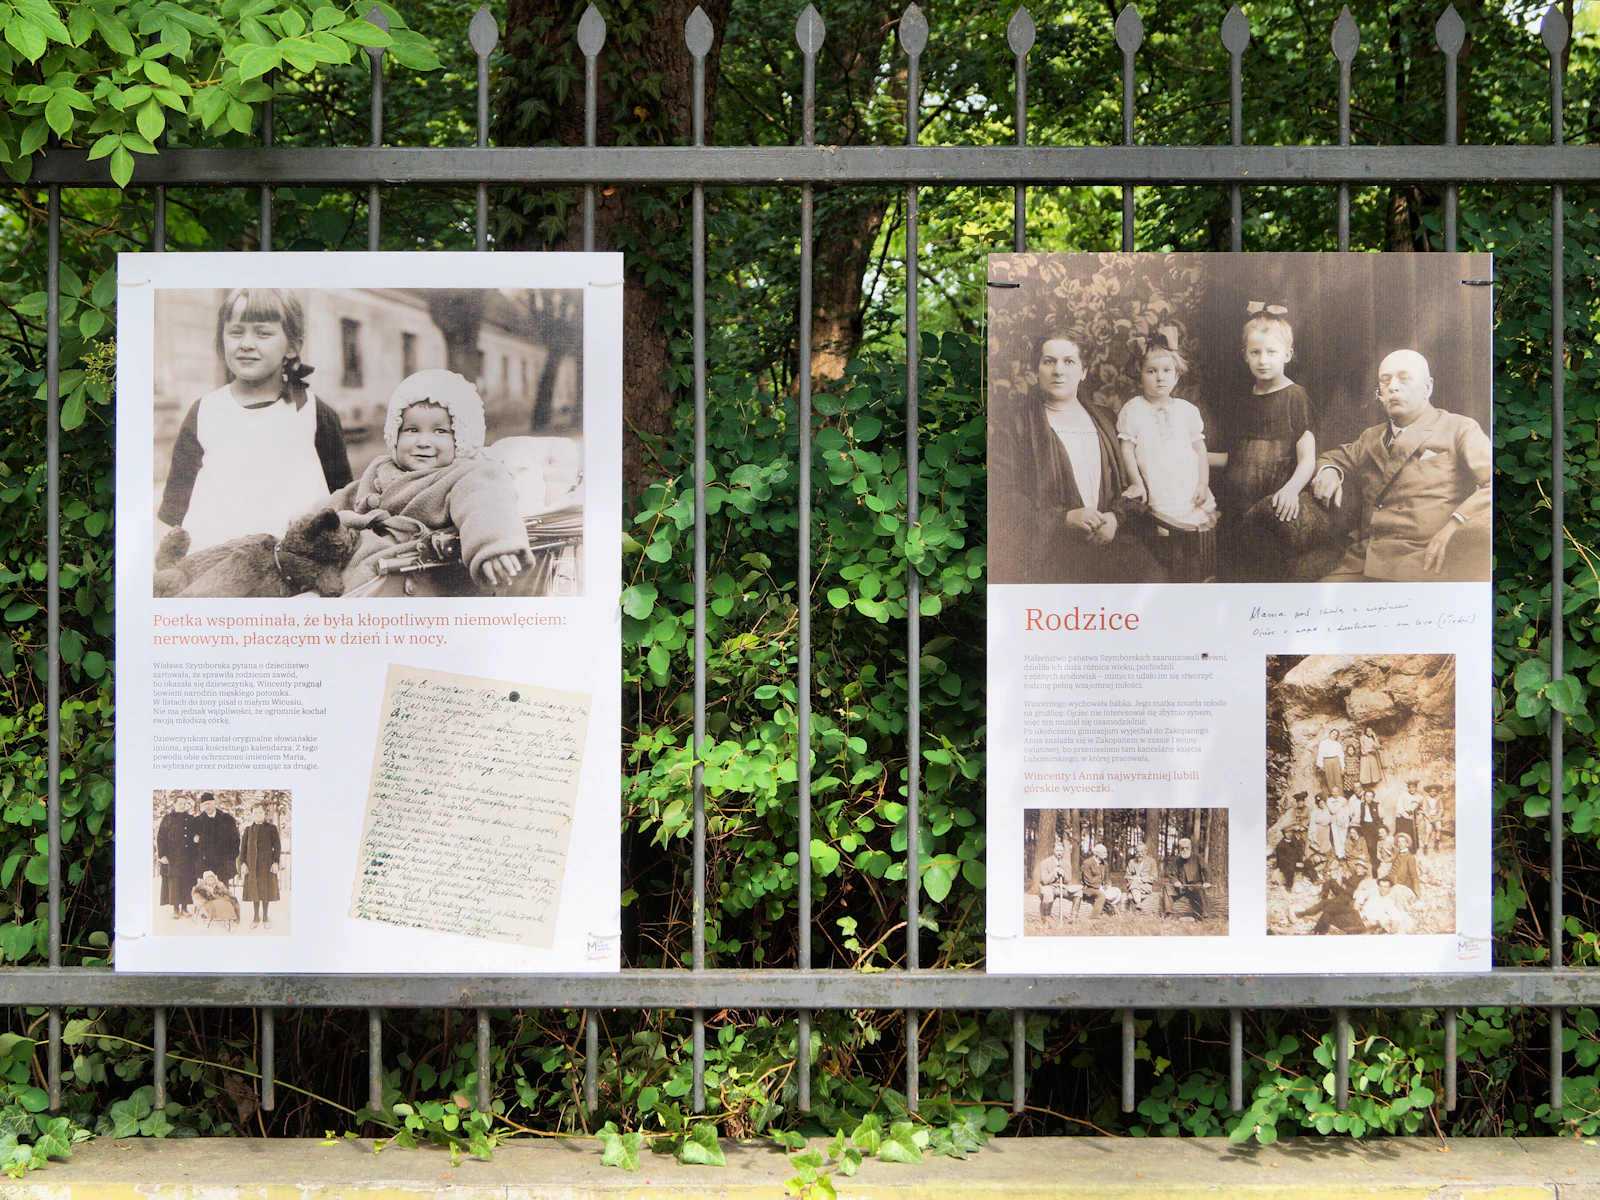 W tle gęsto od zieleni. Na żelaznym ogrodzeniu powieszane dwie duże plansze. Obie z różnymi zdjęciami z dzieciństwa Szymborskiej z jakimś dodatkowym tekstem.